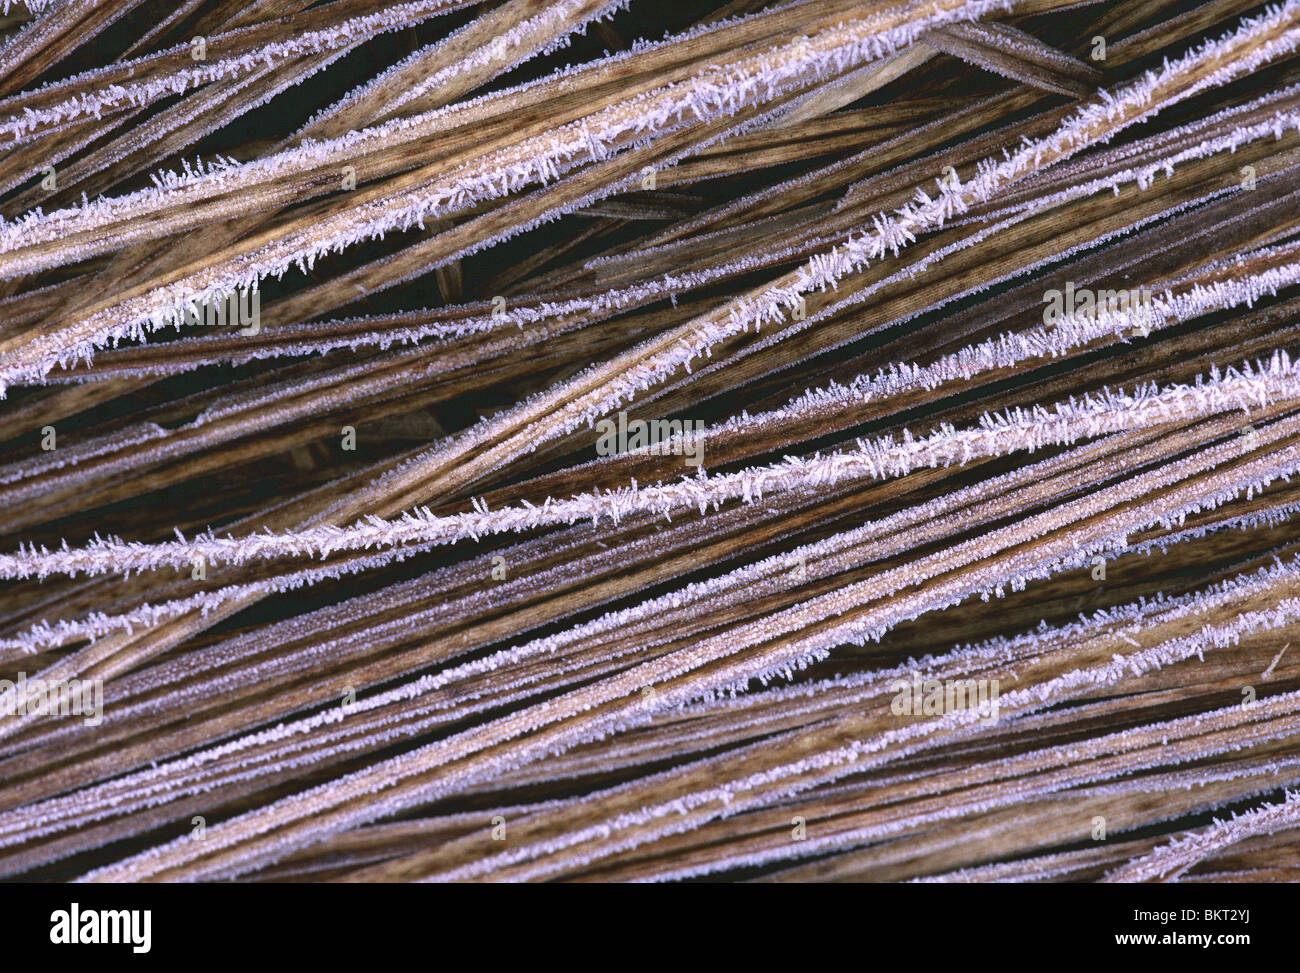 Berijpte zegges (Carex sp.) Frozen sedges (Carex sp.) Stock Photo